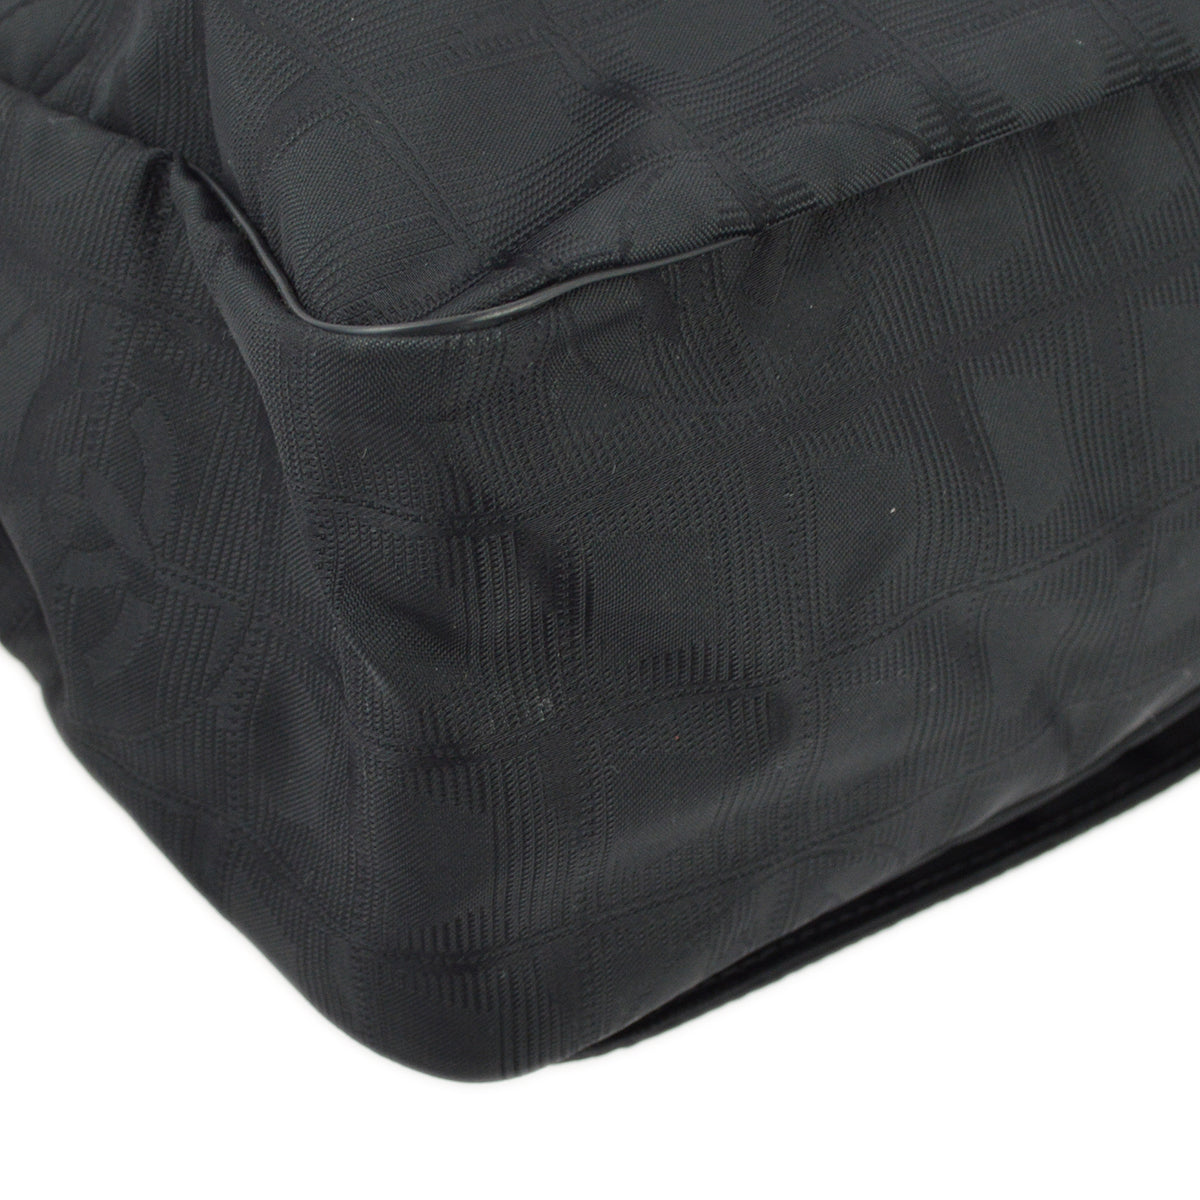 Chanel Black Jacquard Travel Line Messenger Shoulder Bag